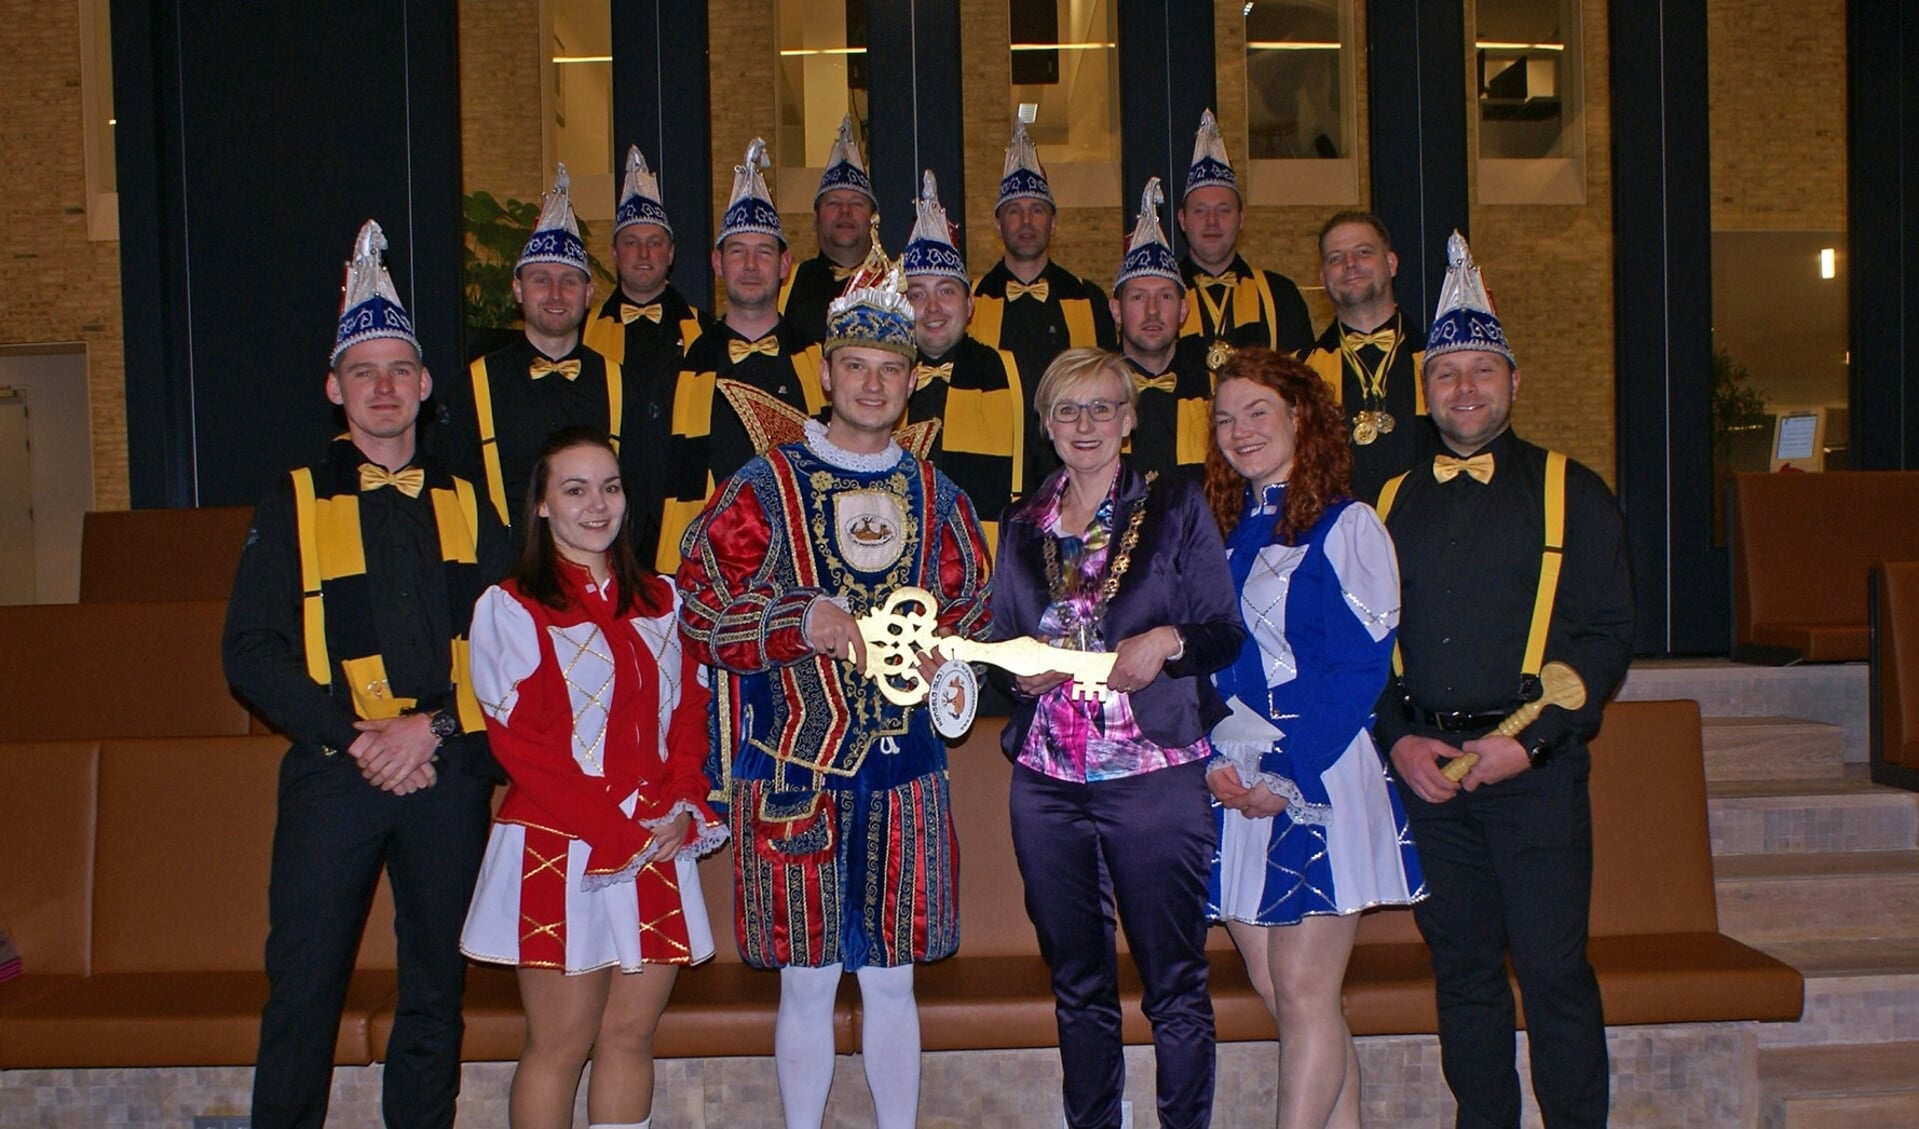 Prins Mark de Eerste, zijn Raad van Elf en dansmariekes van de Peardeknuppels tijdens sleuteloverdracht met burgemeester Besselink. Foto: Marjon Harmsen